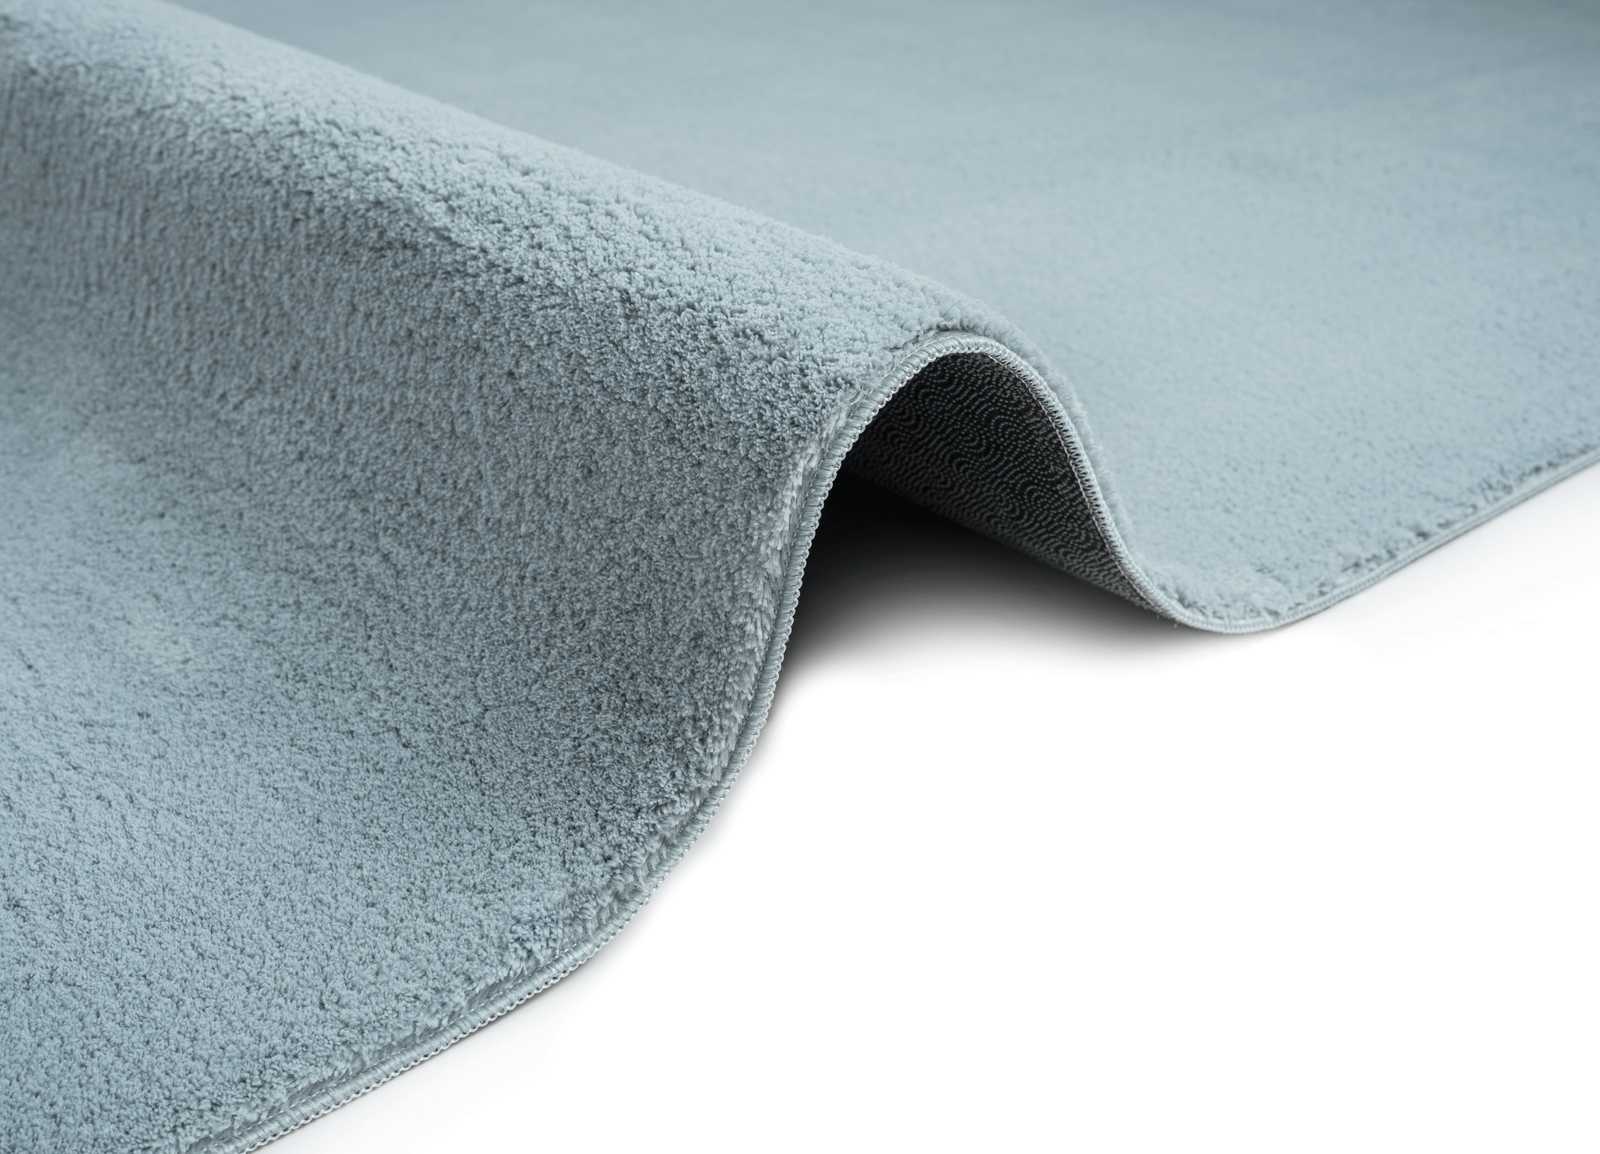             Pluizig hoogpolig tapijt in blauw - 230 x 160 cm
        